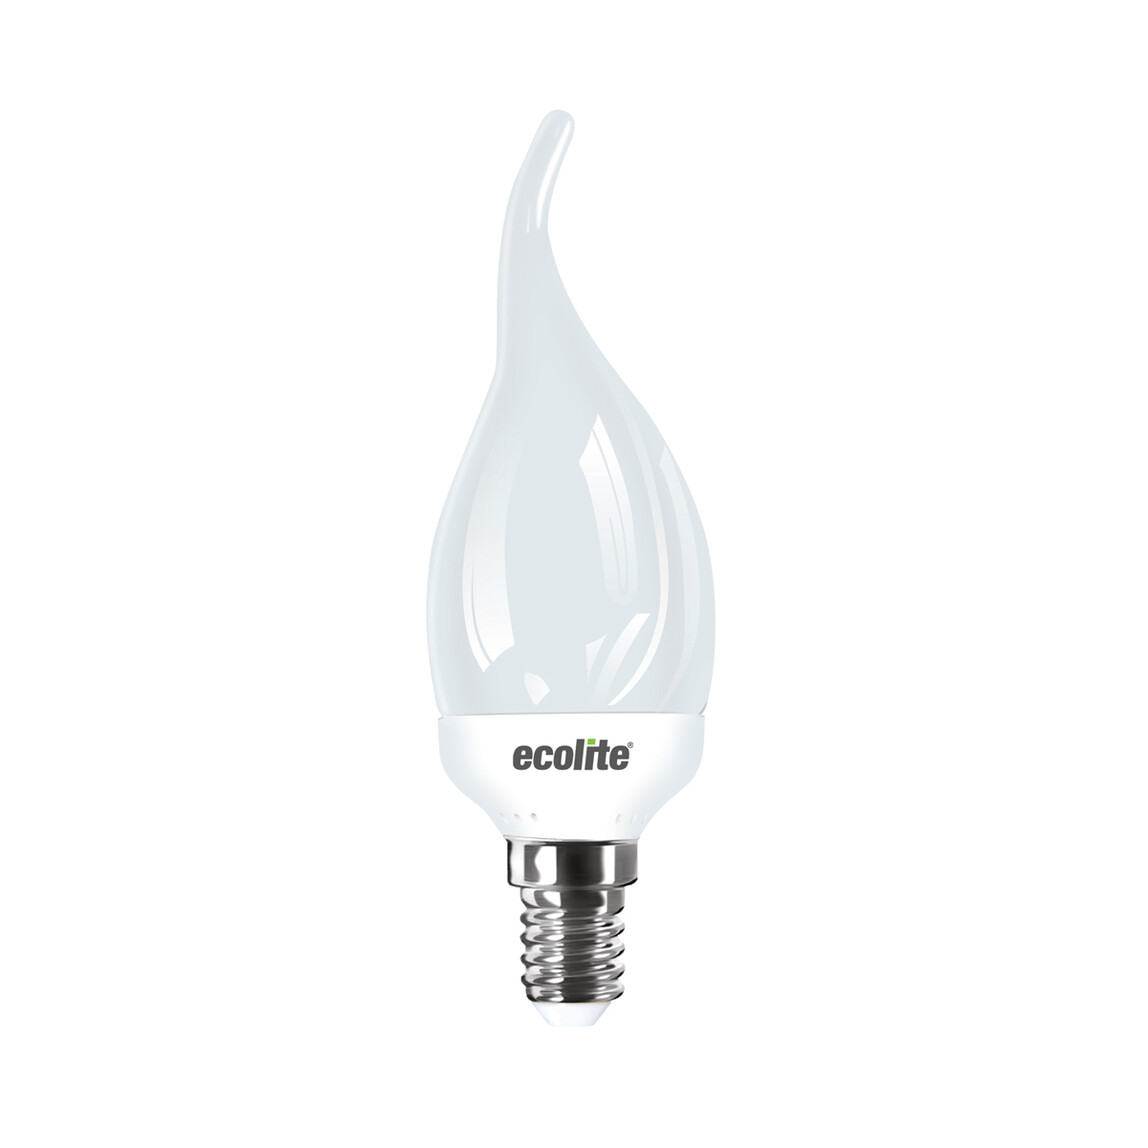    Ecolite Candle Flame 5 W Beyaz Mum E14 Duy Led Ampul   